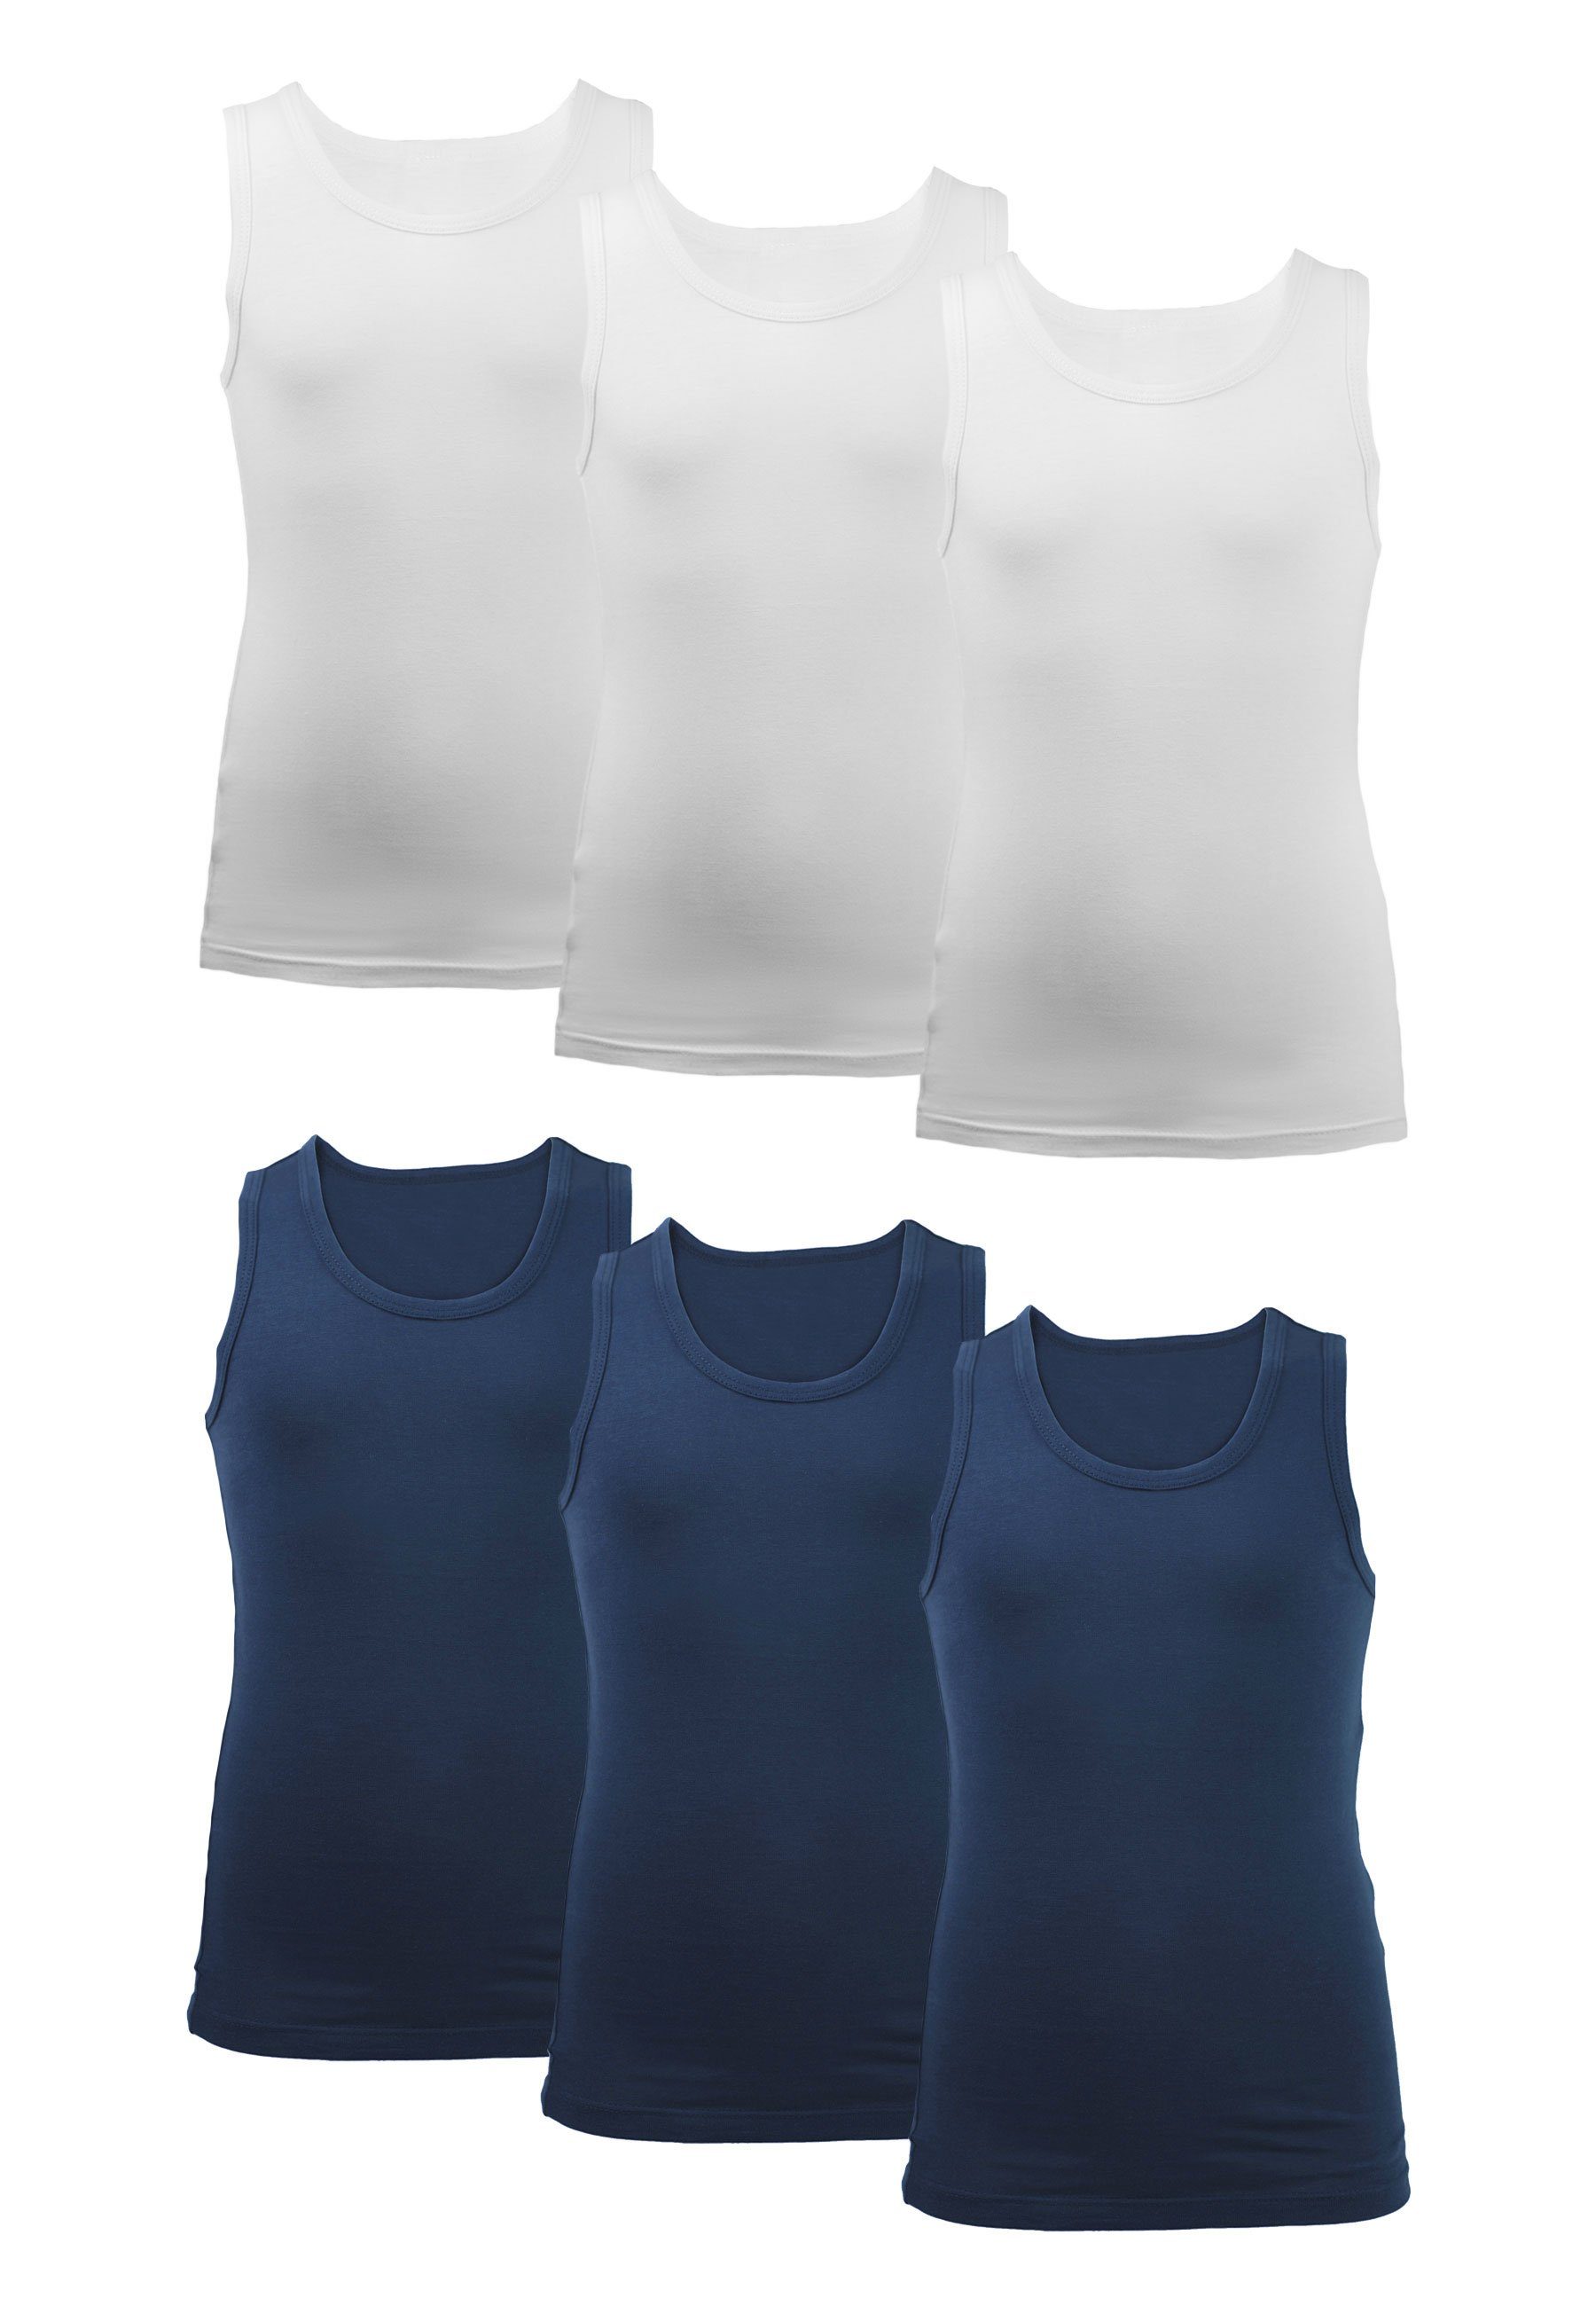 CARBURANT Unterhemd 6er-Pack für Jungen weiß/blau aus reiner Baumwolle